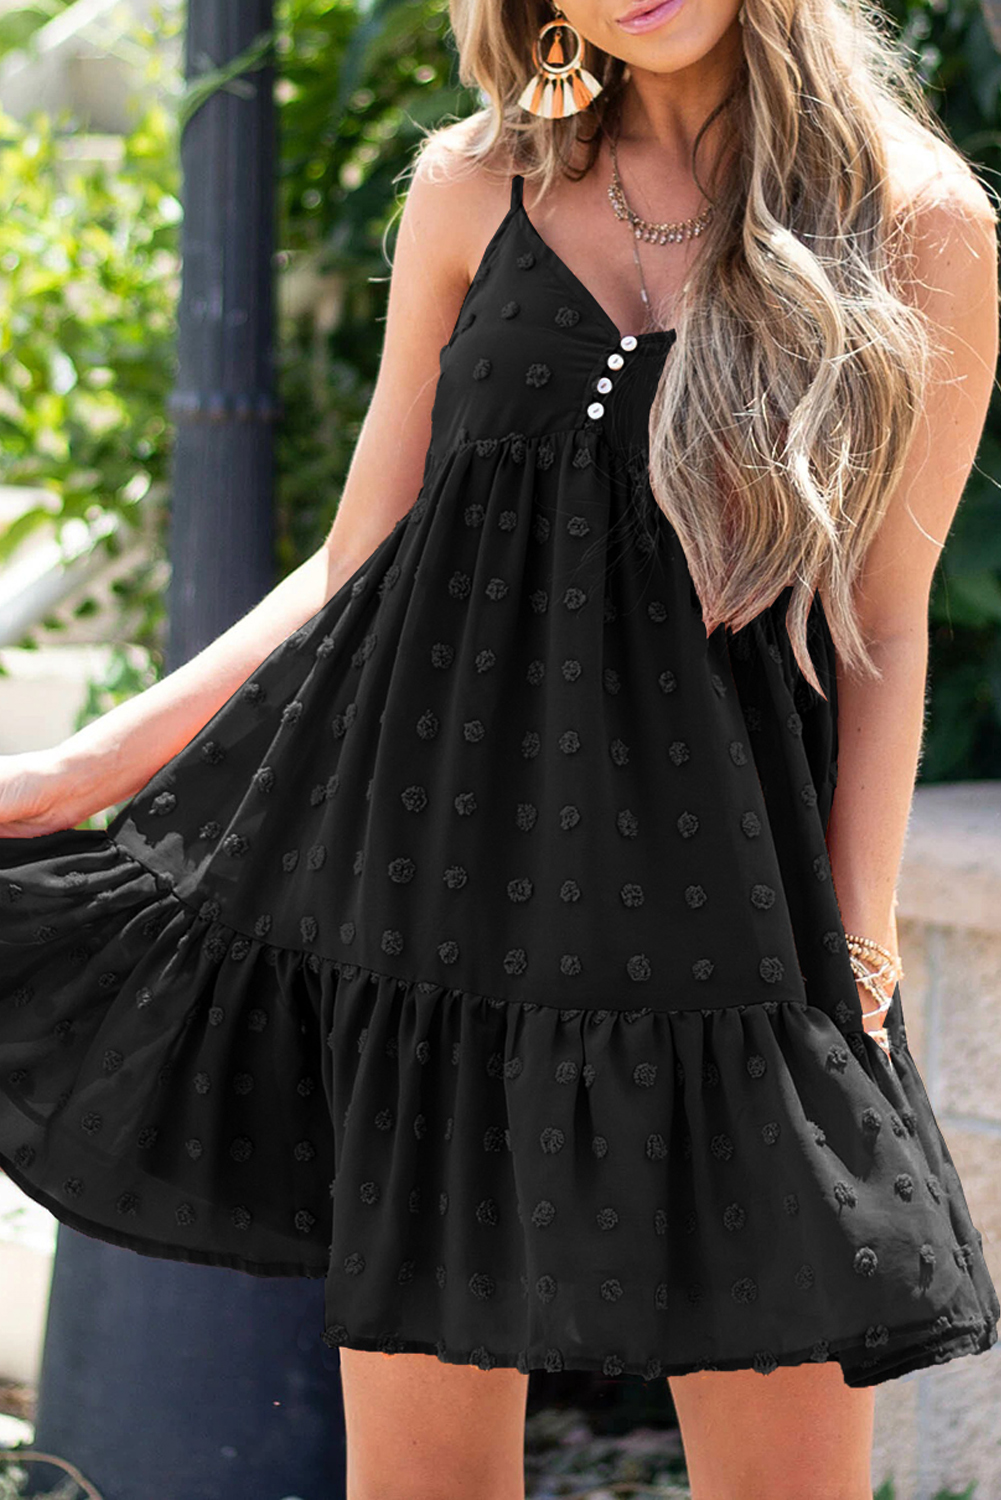 Black Polka Dot Texture Slip Mini Dress - (US 12-14)L